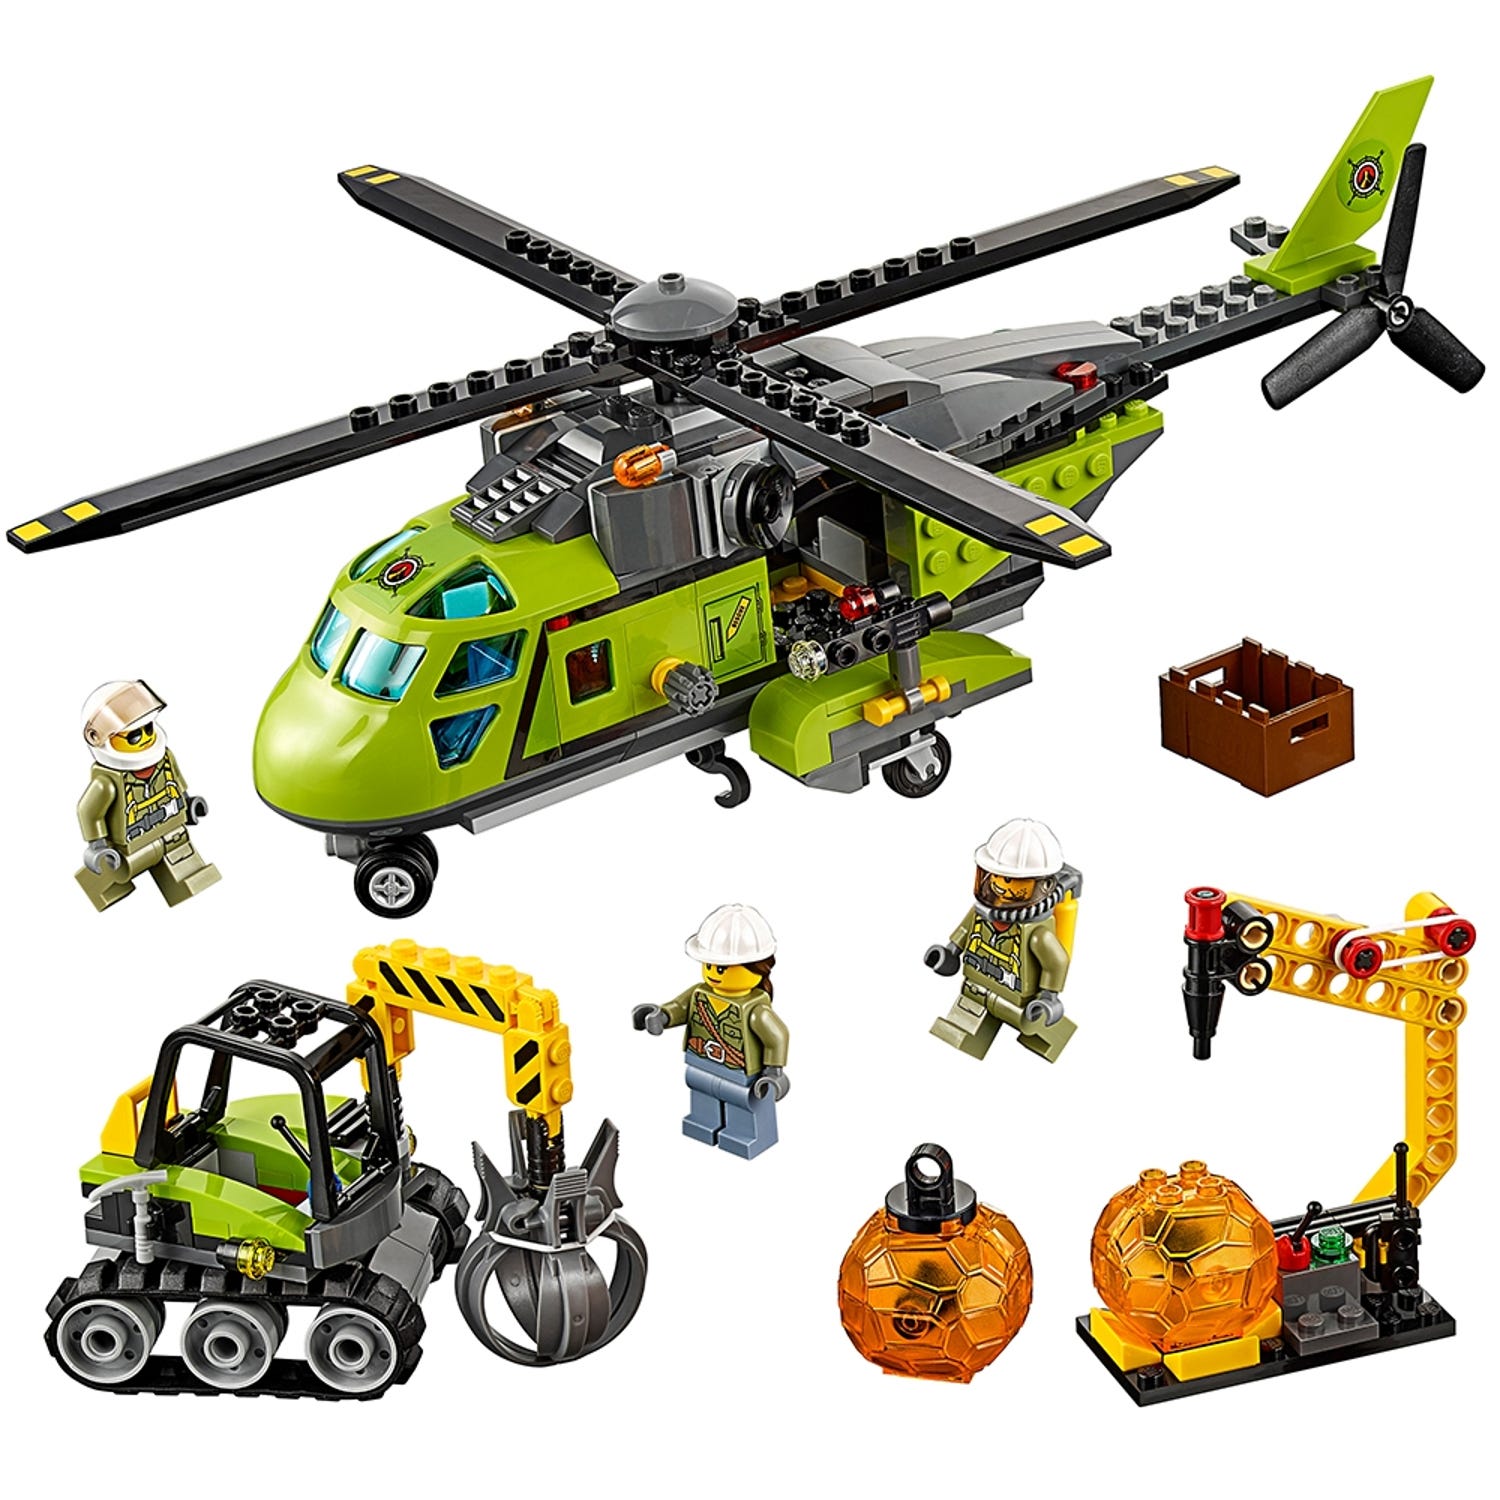 Vulkan forsyningshelikopter 60123 City | Officiel LEGO® Shop DK